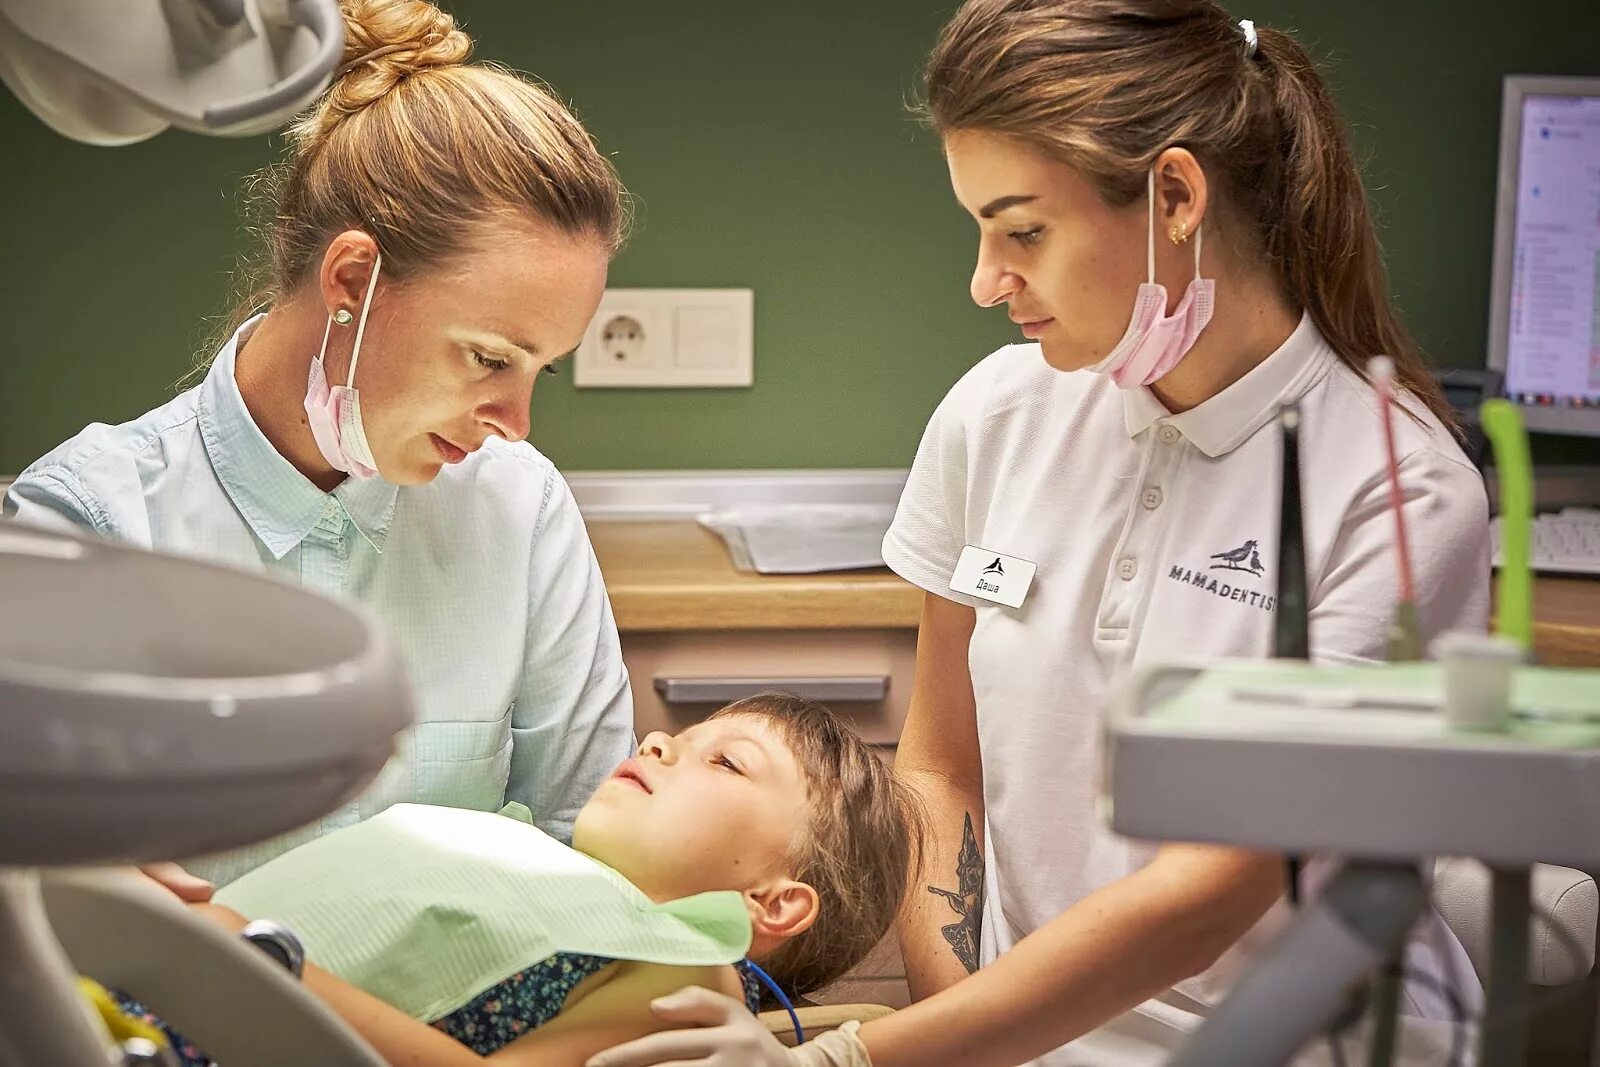 Зубной сегодня. Ребенок и стоматология групповое занятие. Виртуальная экскурсия детей стоматология. Медикаменте детская стоматология. Детская стоматология 1080*1080.